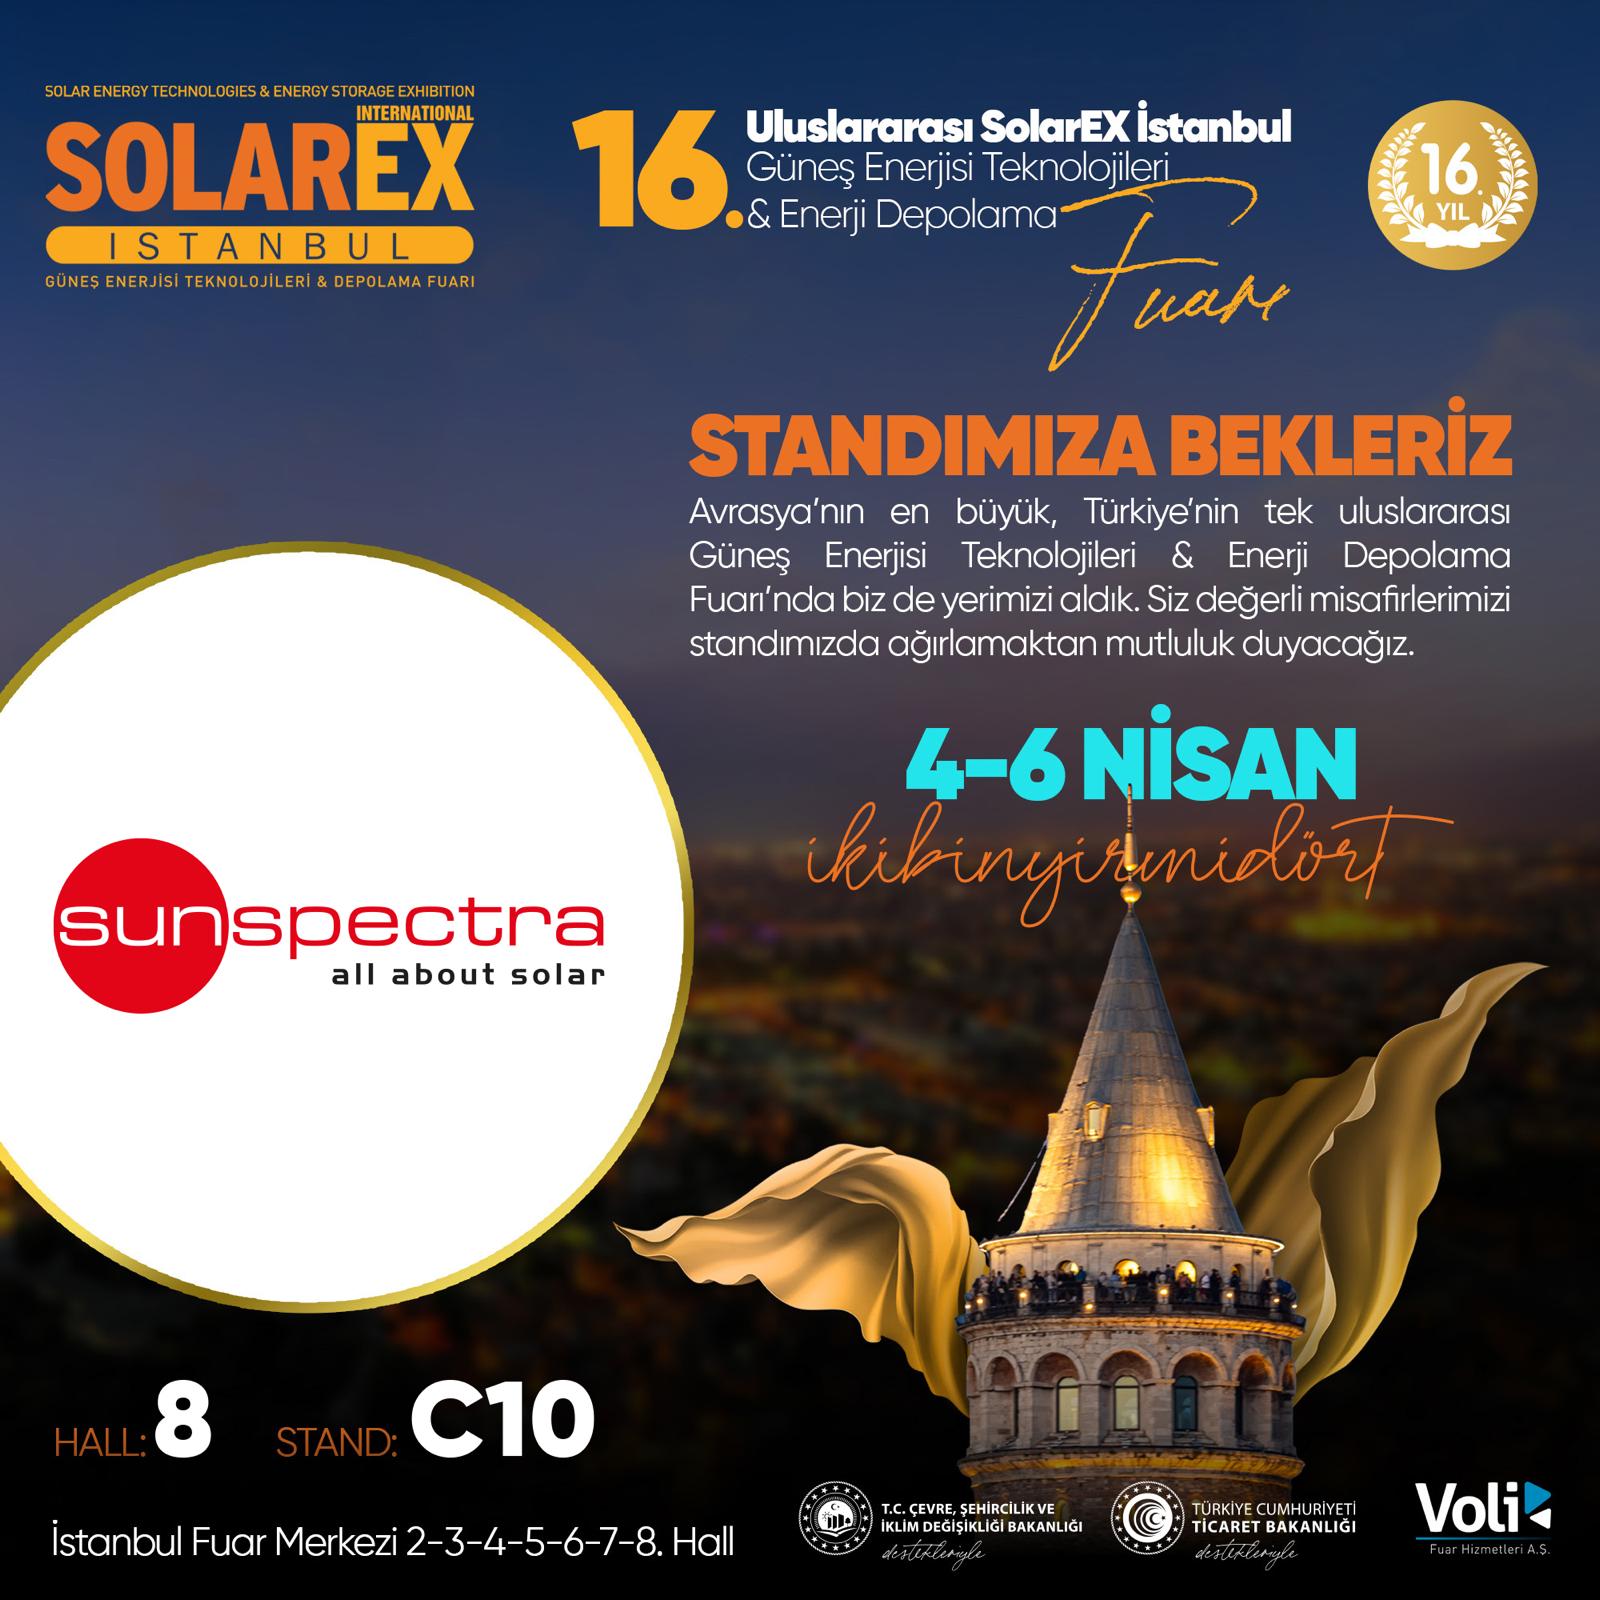 SolarEX fuarı 4-6 Nisan tarihleri arasında İstanbul’da.